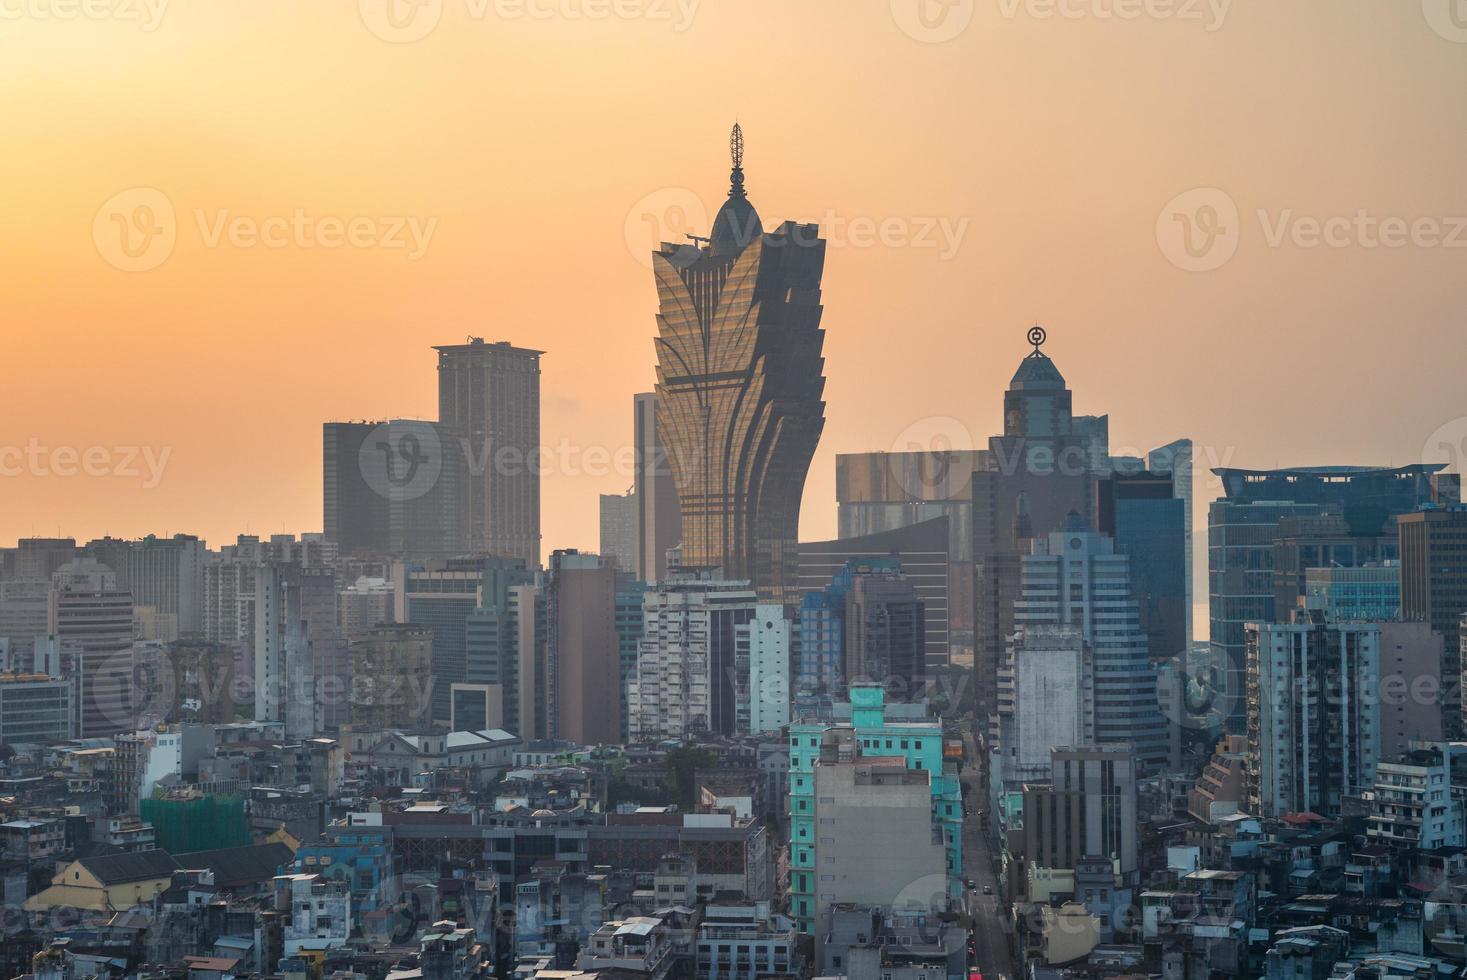 paisagem urbana de macau na china ao pôr do sol foto